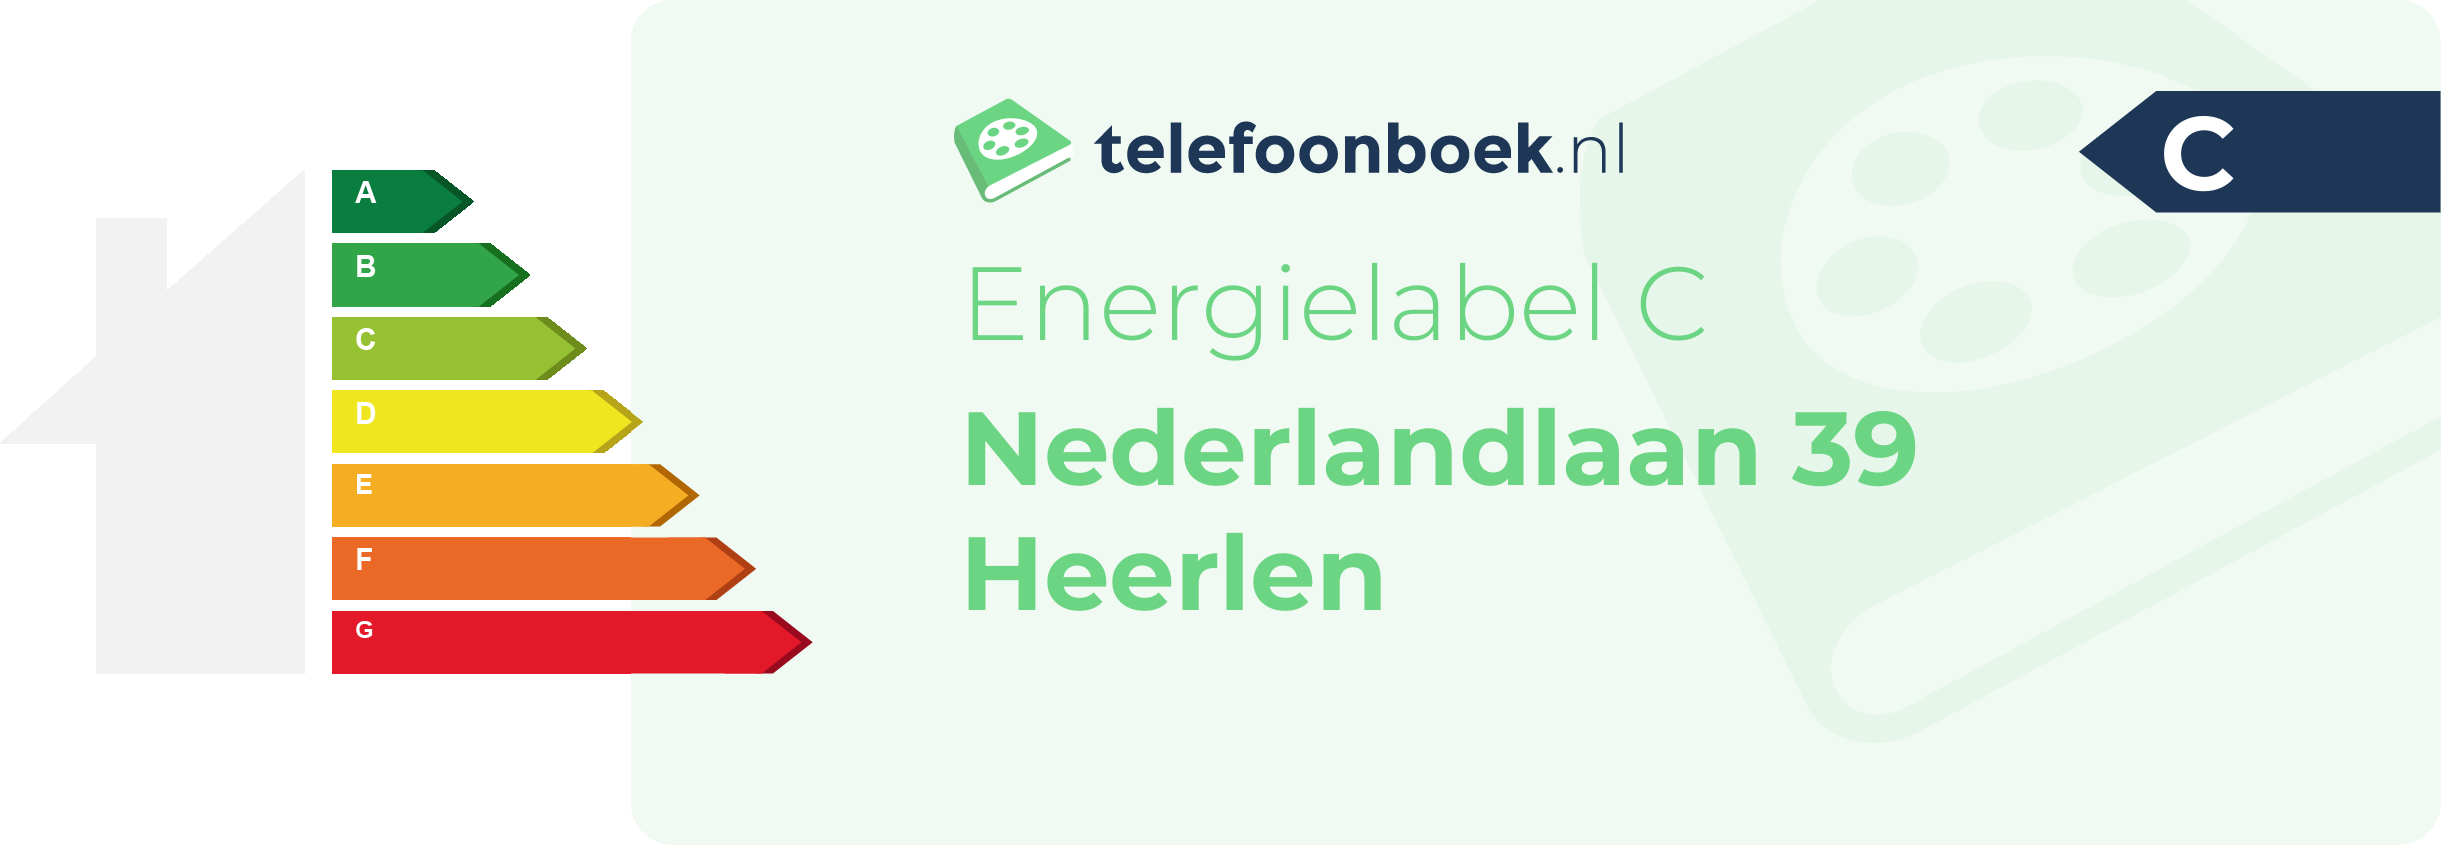 Energielabel Nederlandlaan 39 Heerlen